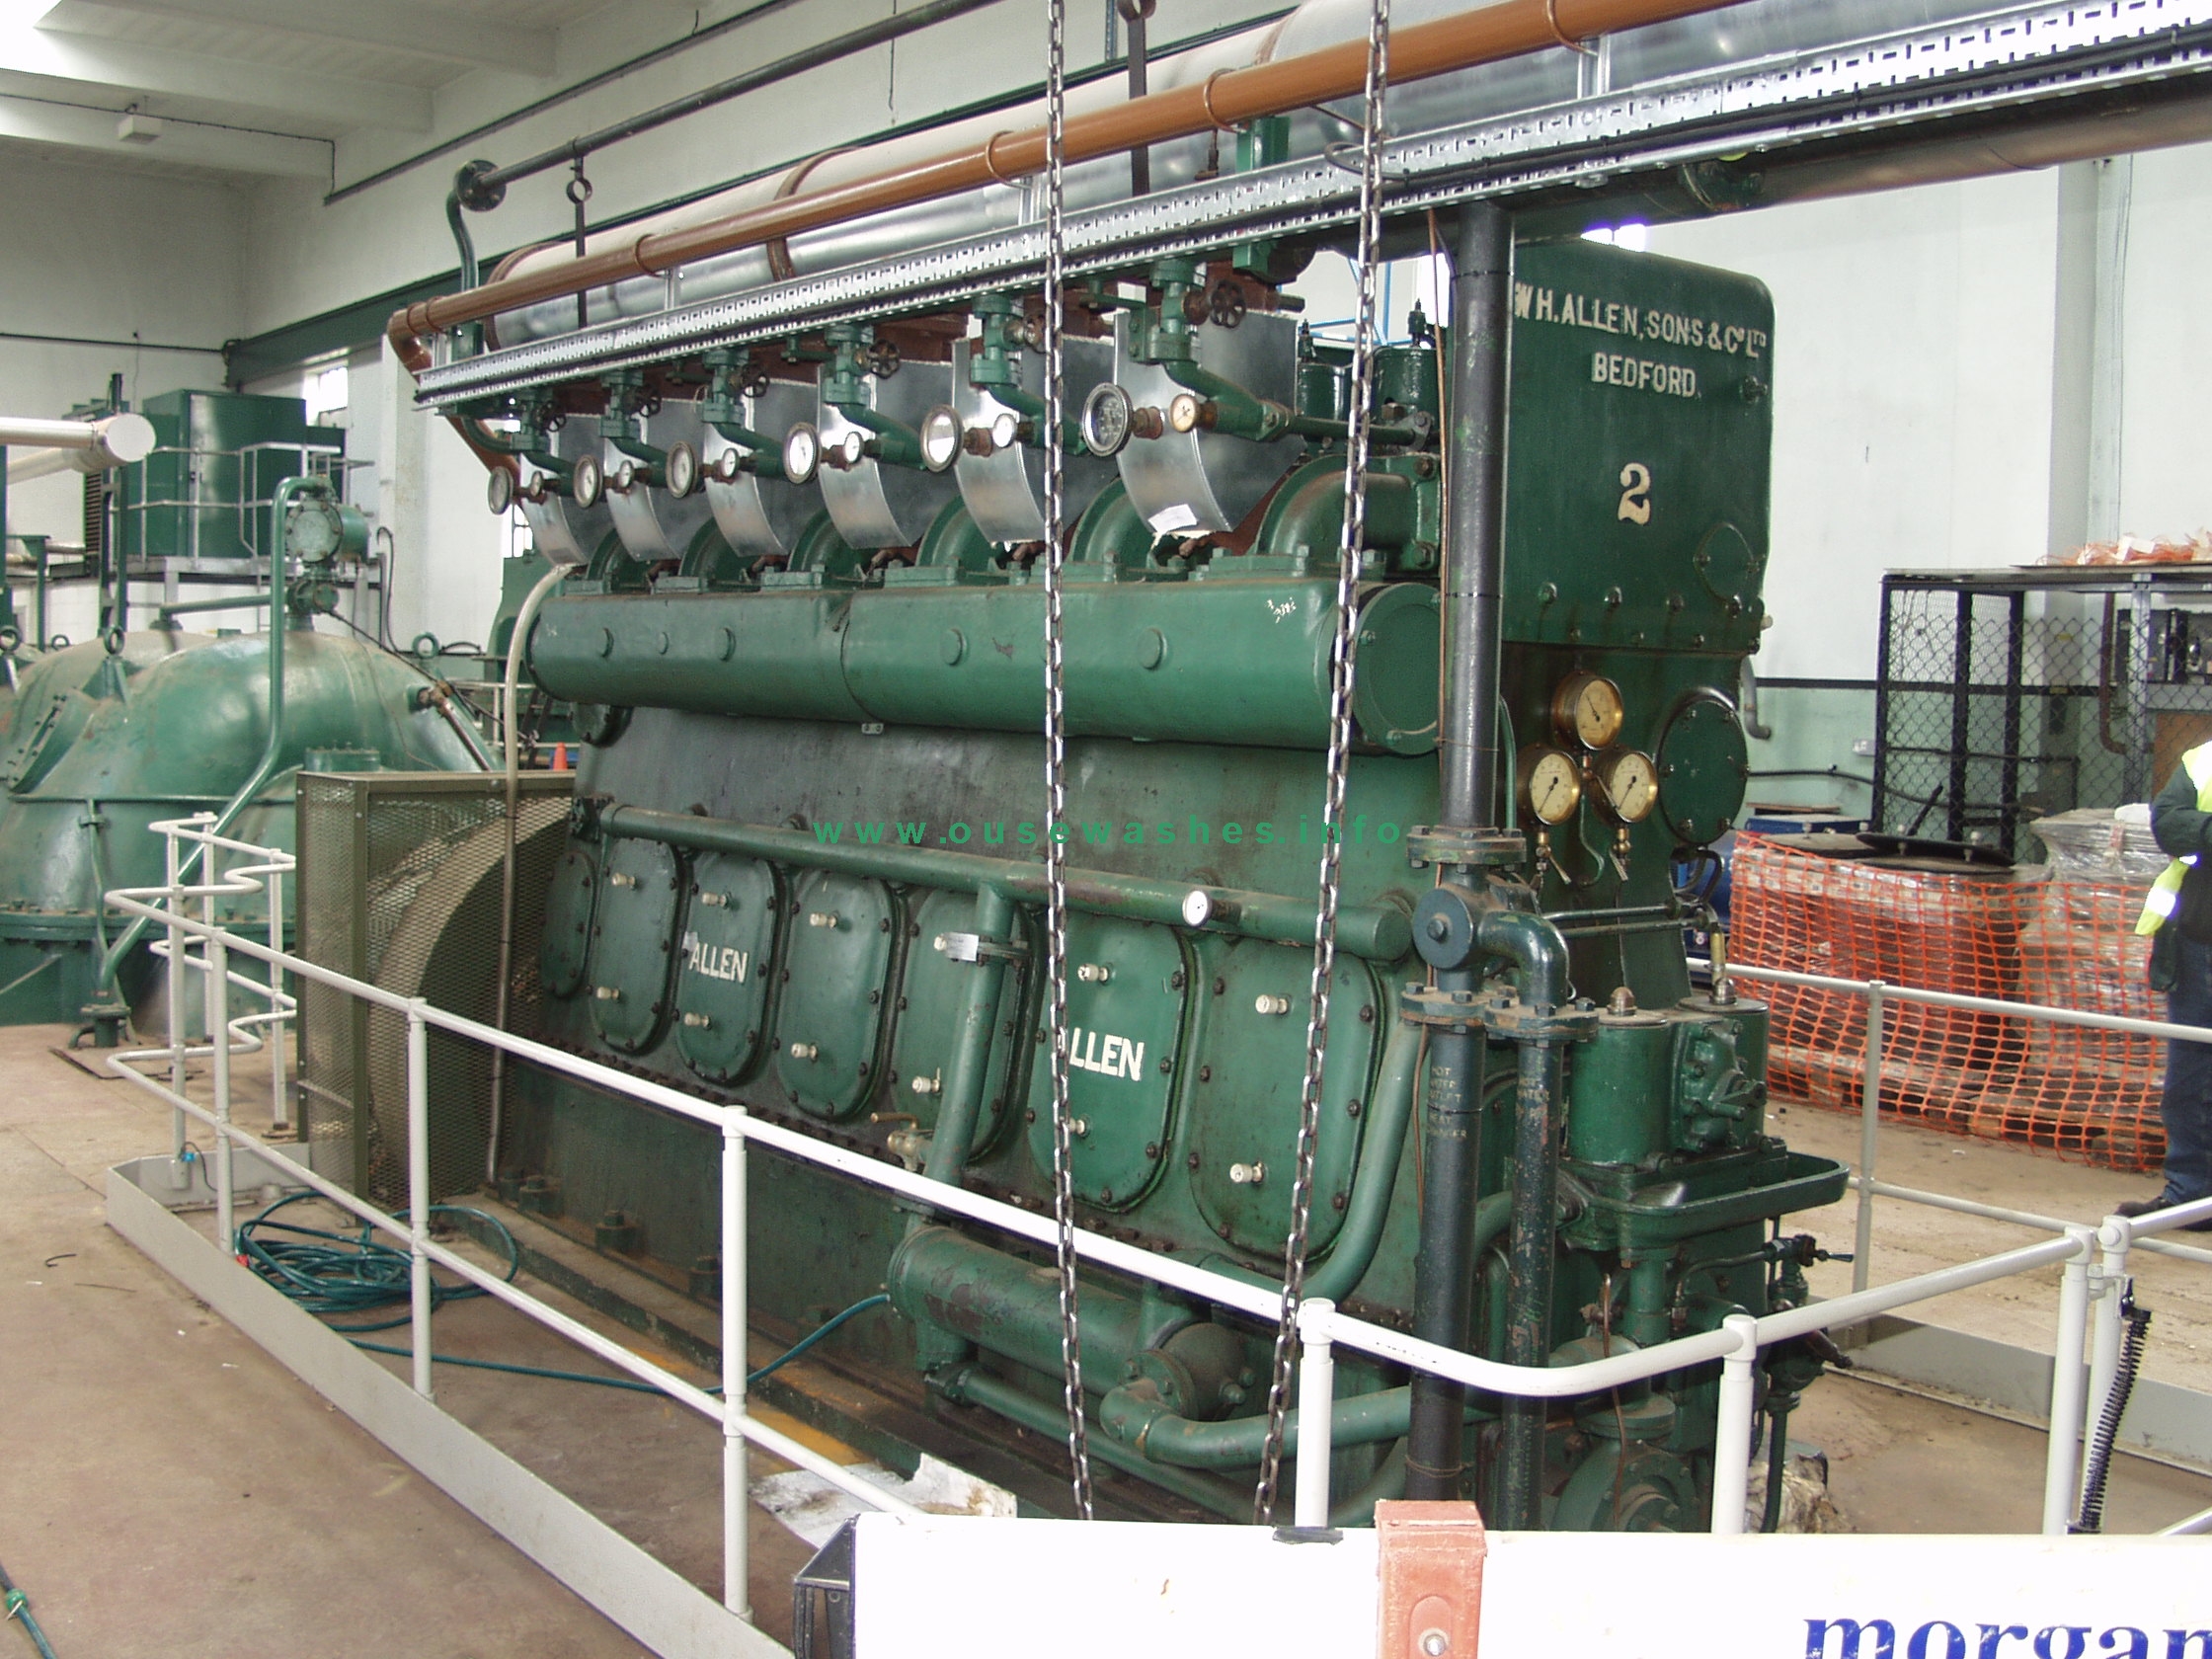 Allen diesel engine